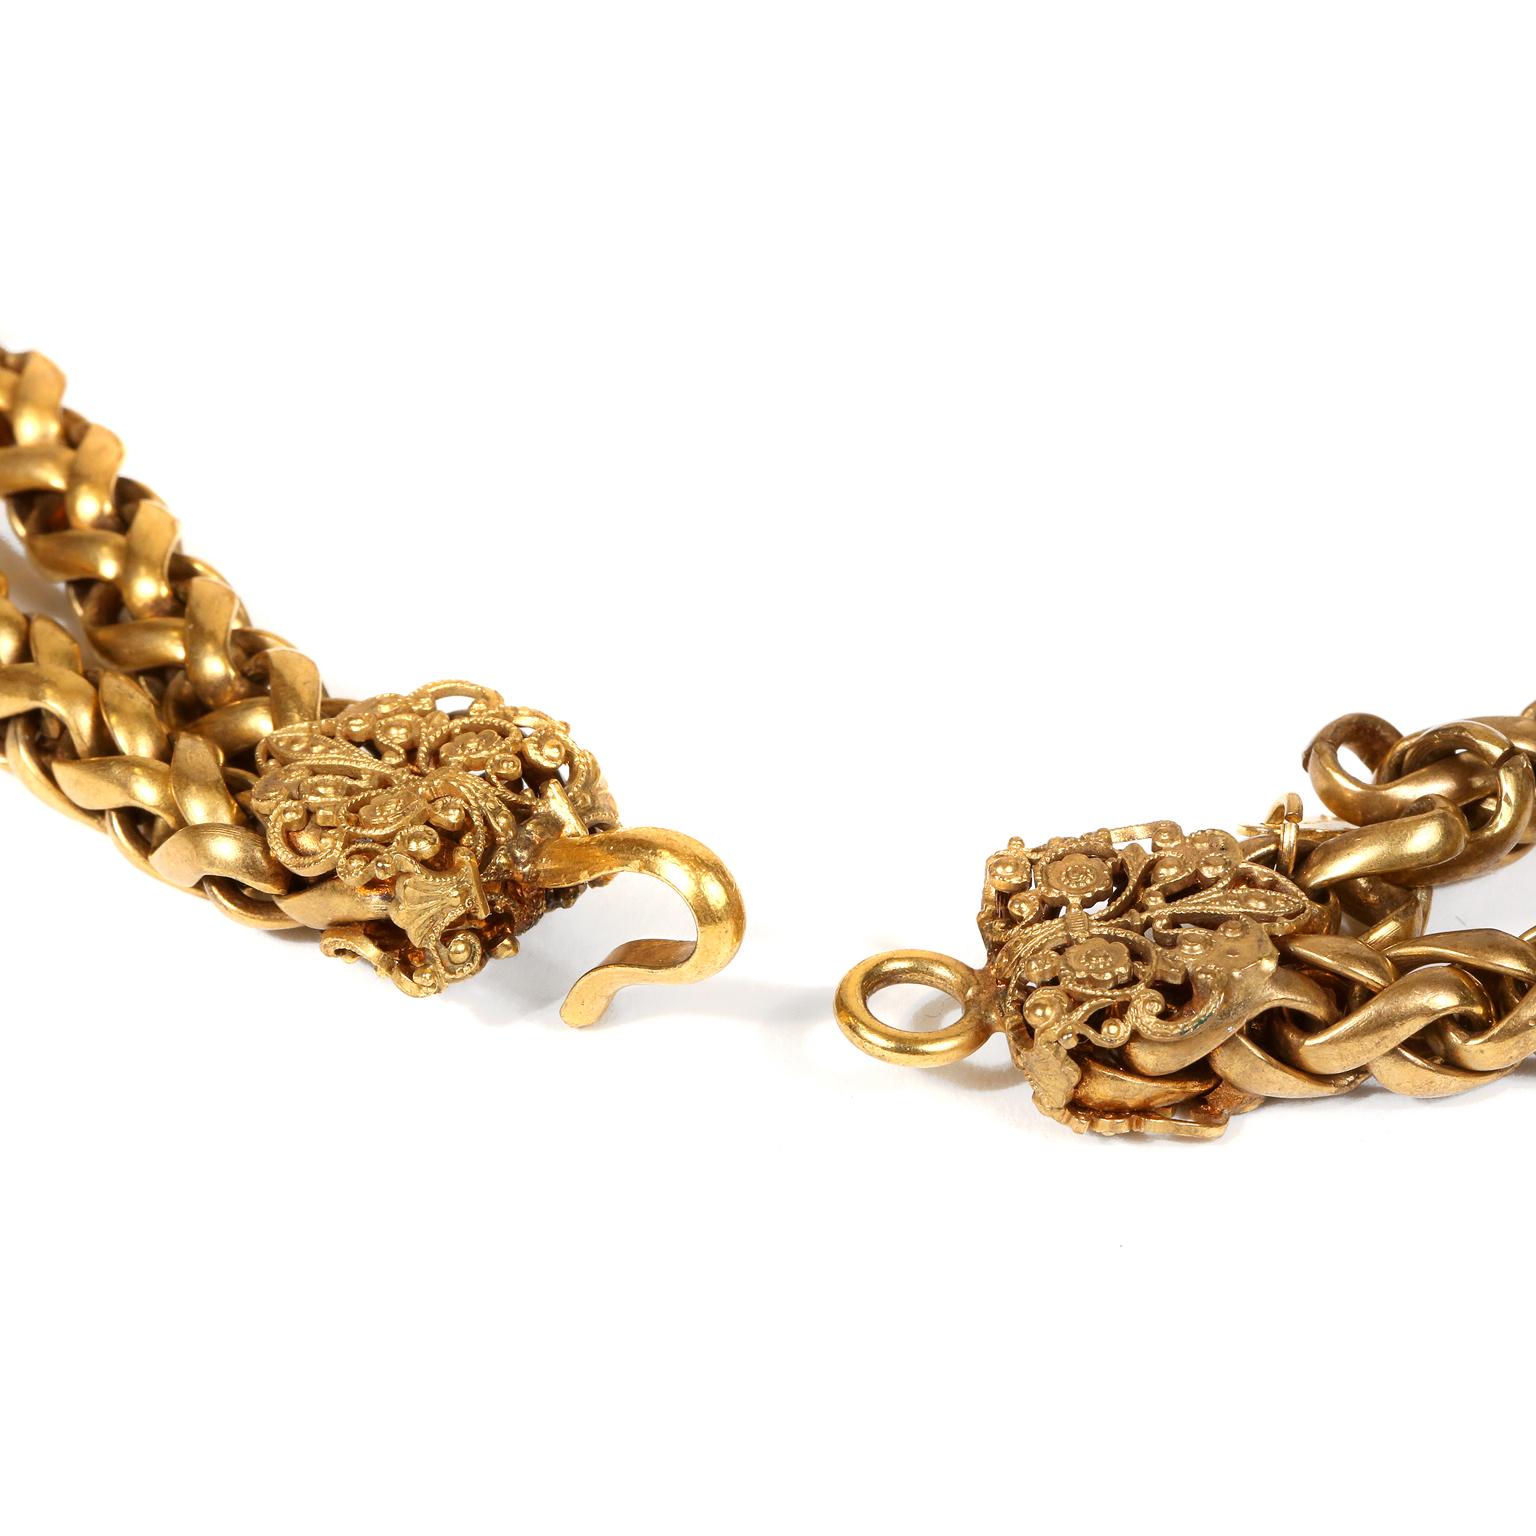 Diese authentische Chanel Gold Tone Double Strand Choker ist in ausgezeichnetem Vintage-Zustand.  Kräftige goldfarbene Weizenkette ist doppelt vorhanden.  Verschnörkelter floraler Verschluss.  Inklusive Tasche oder Box.  Ungefähr 15,5 Zoll Länge.  
